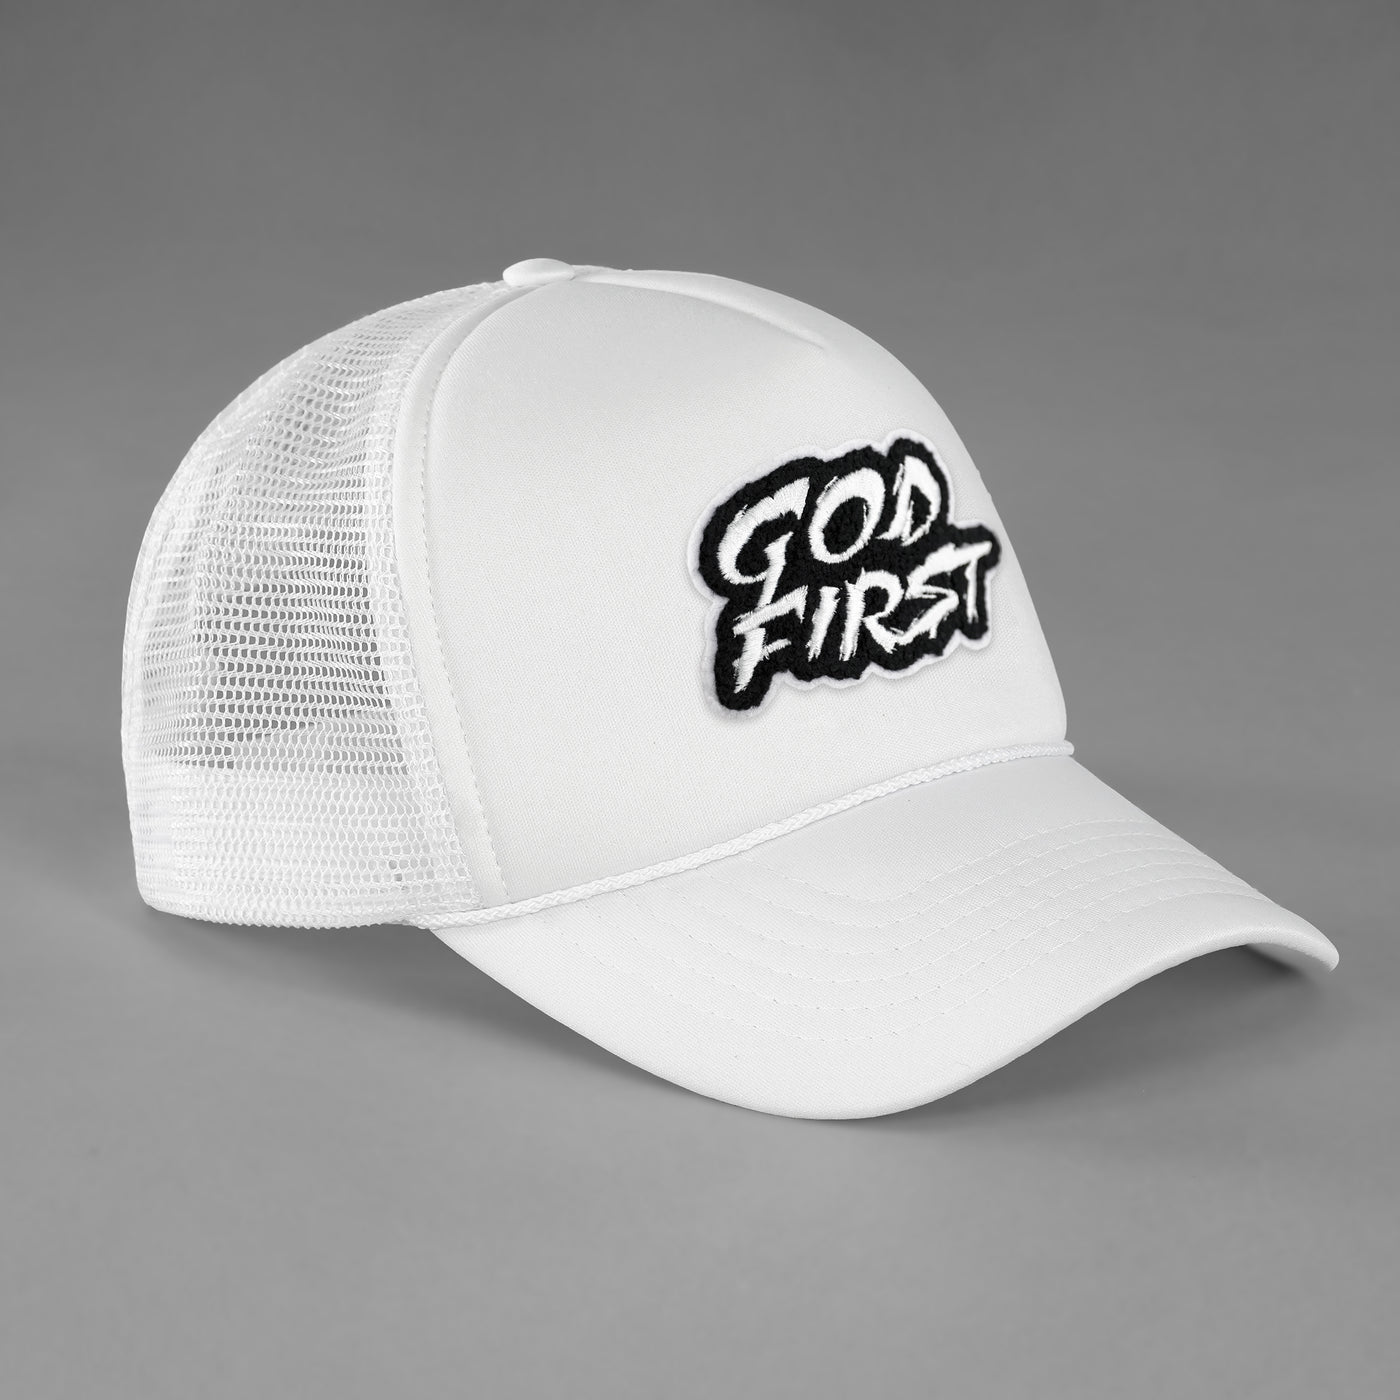 God First White Trucker Hat